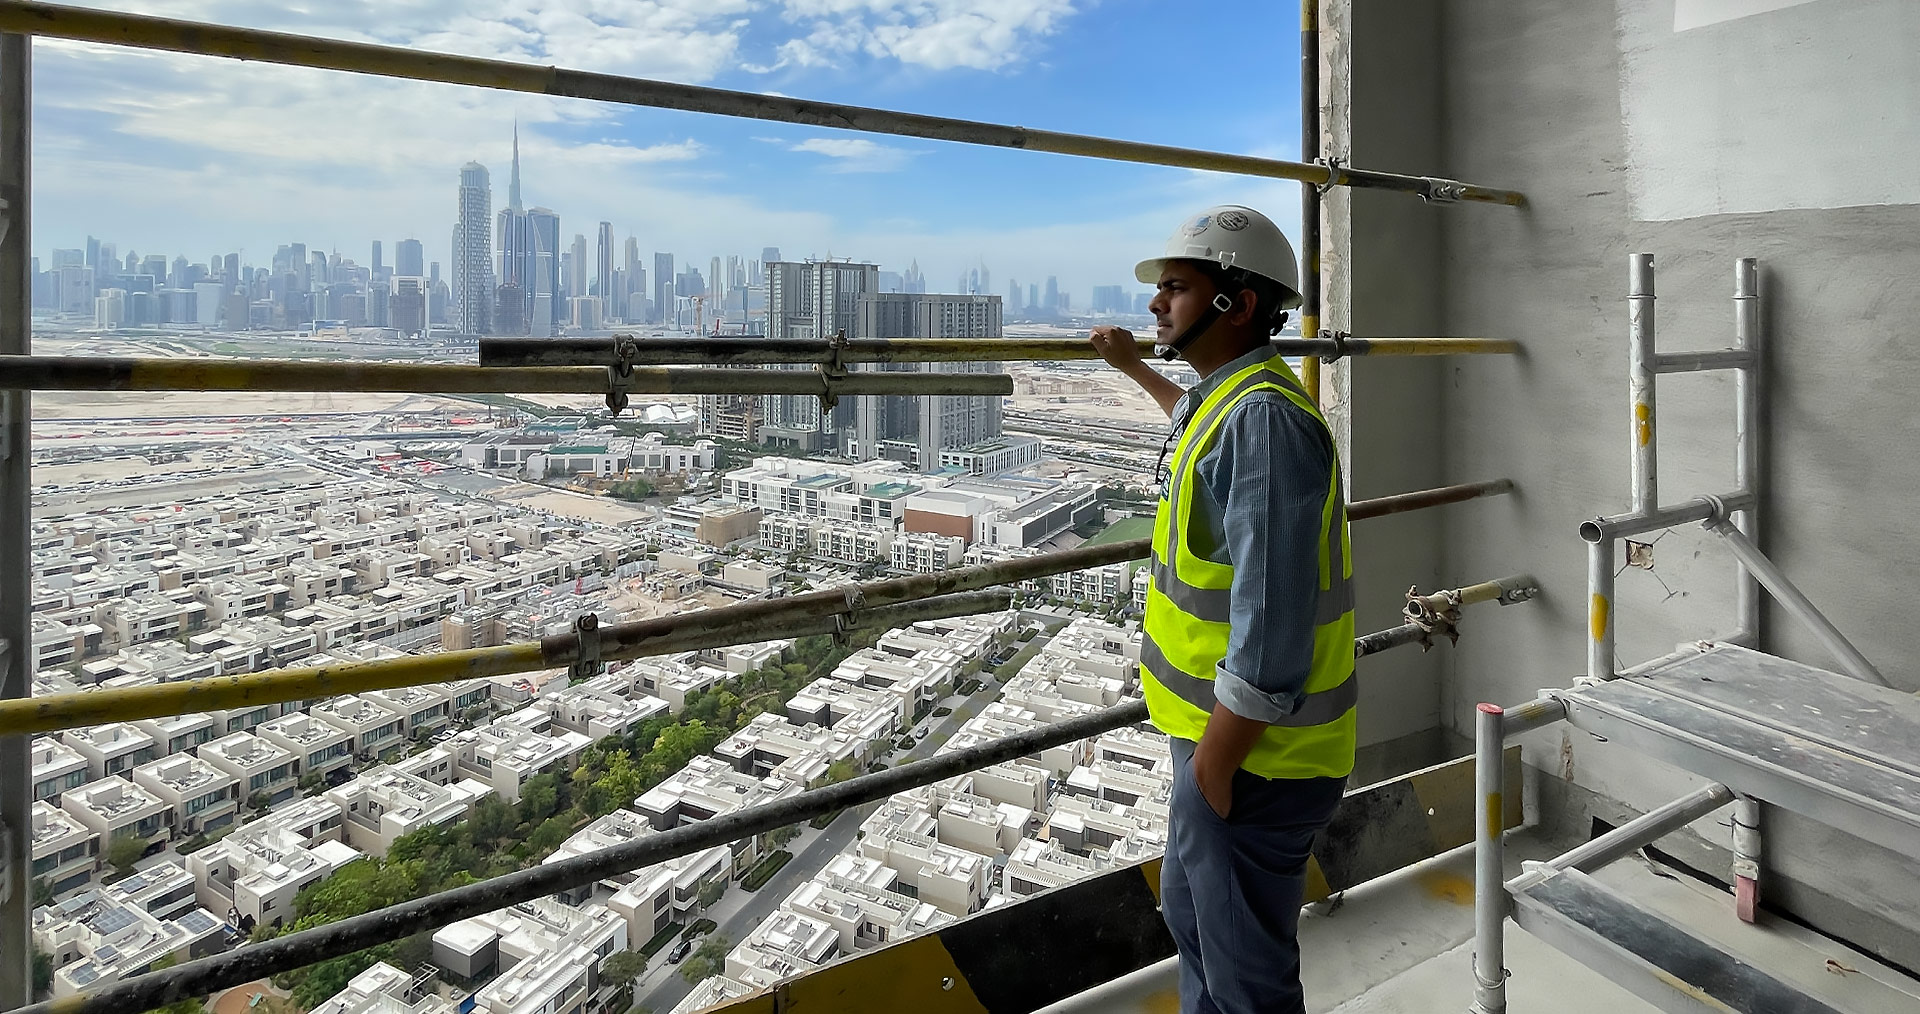 Worker called Vineet Kumar Bhaskar on a high-rise scaffold with city view